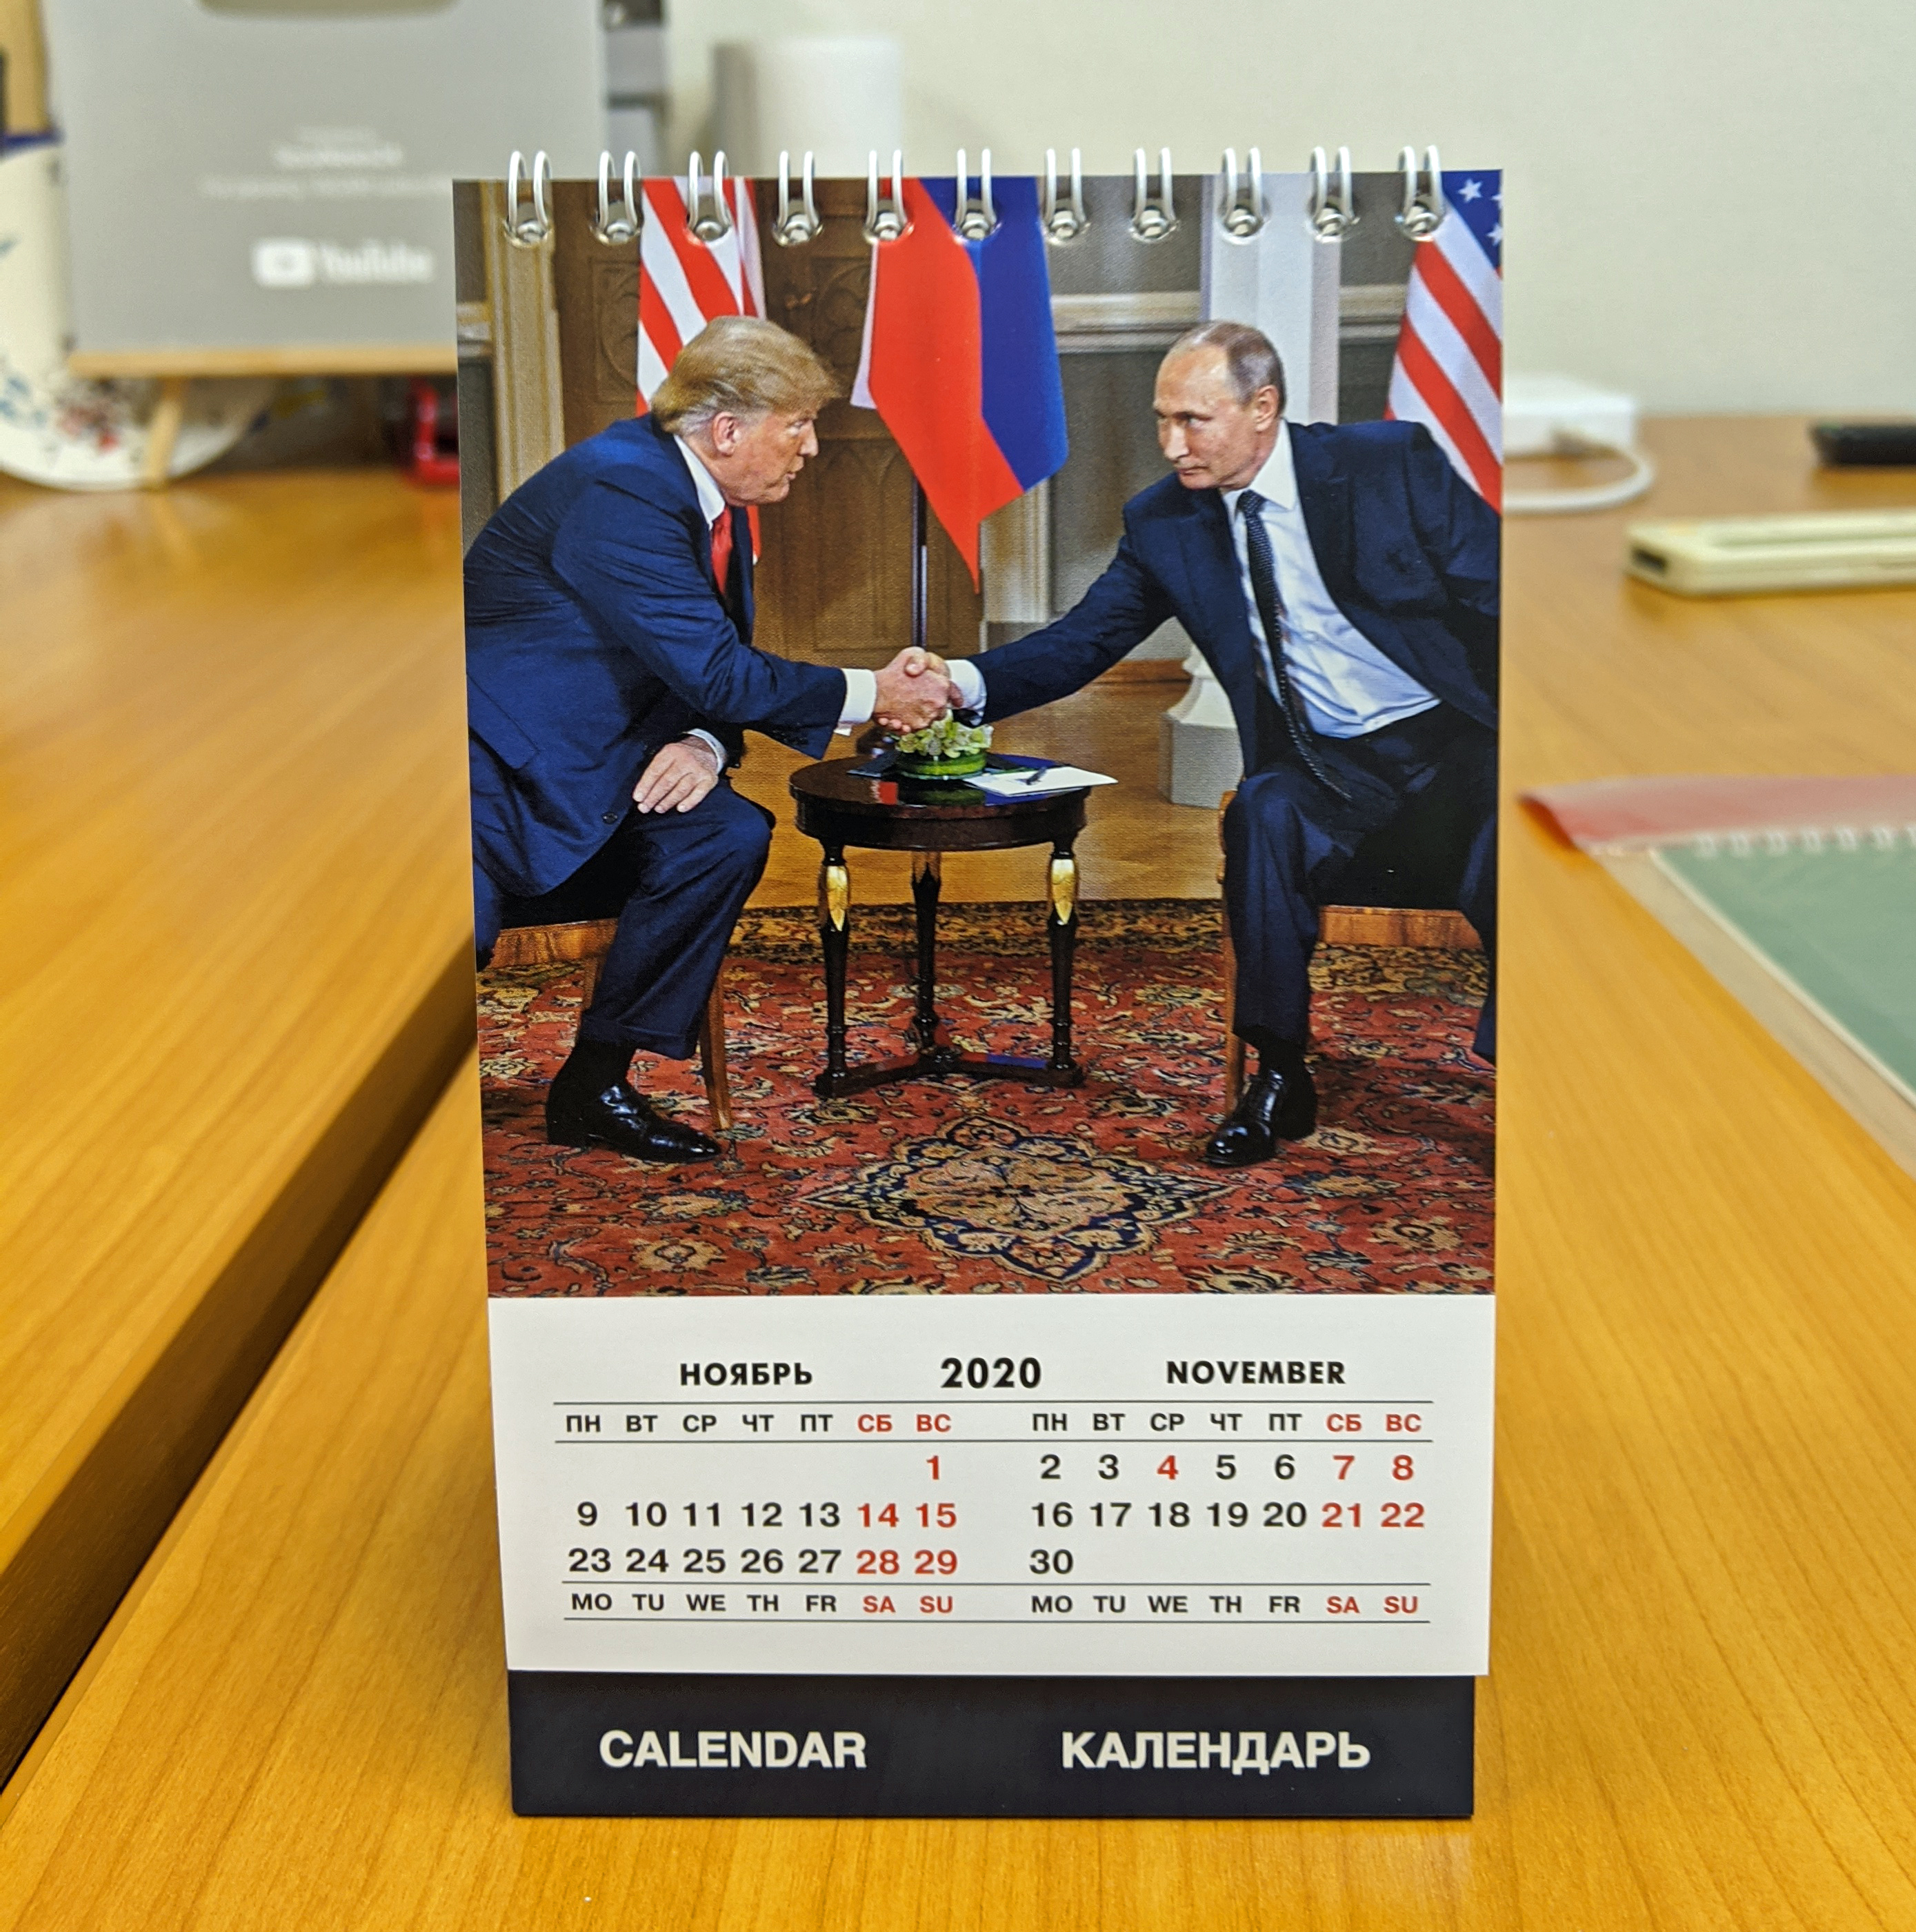 来年のカレンダーはコレで決まりだ 男の中の男 プーチン大統領カレンダーが最高にカッコいい ロケットニュース24